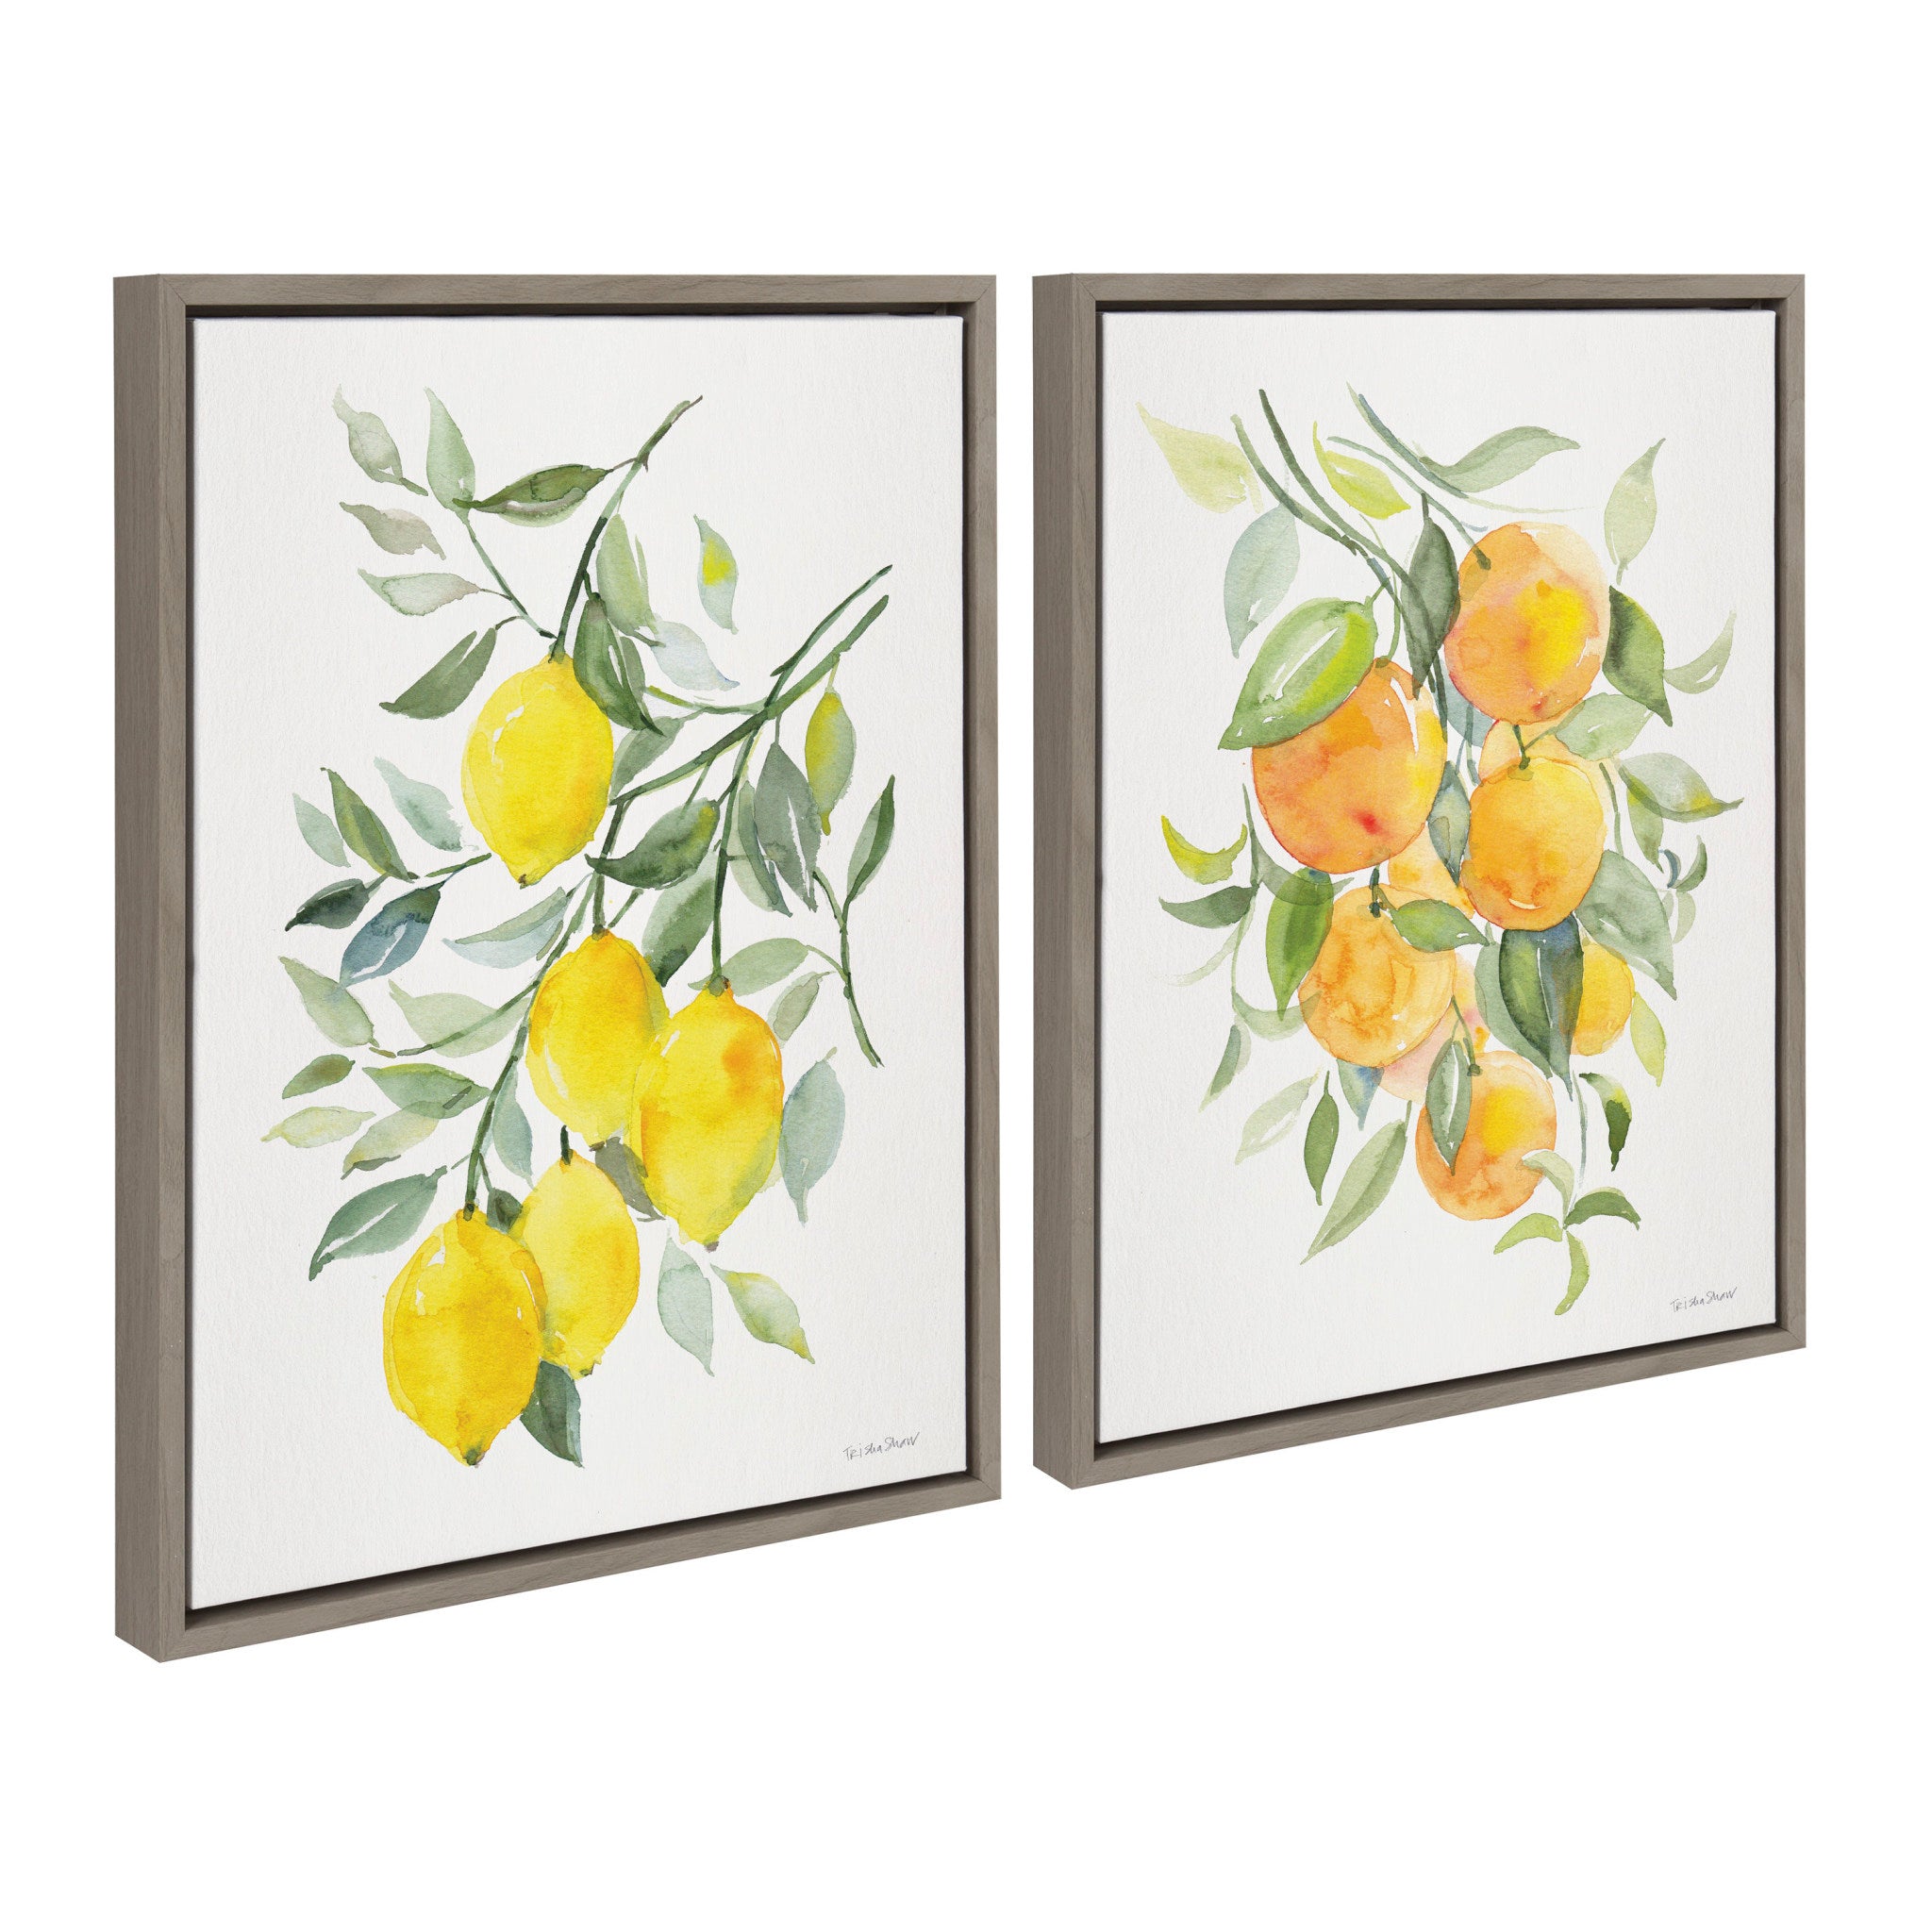 Sylvie Orange Citrus and Lemon Citrus Framed Canvas Art Set by Patricia Shaw